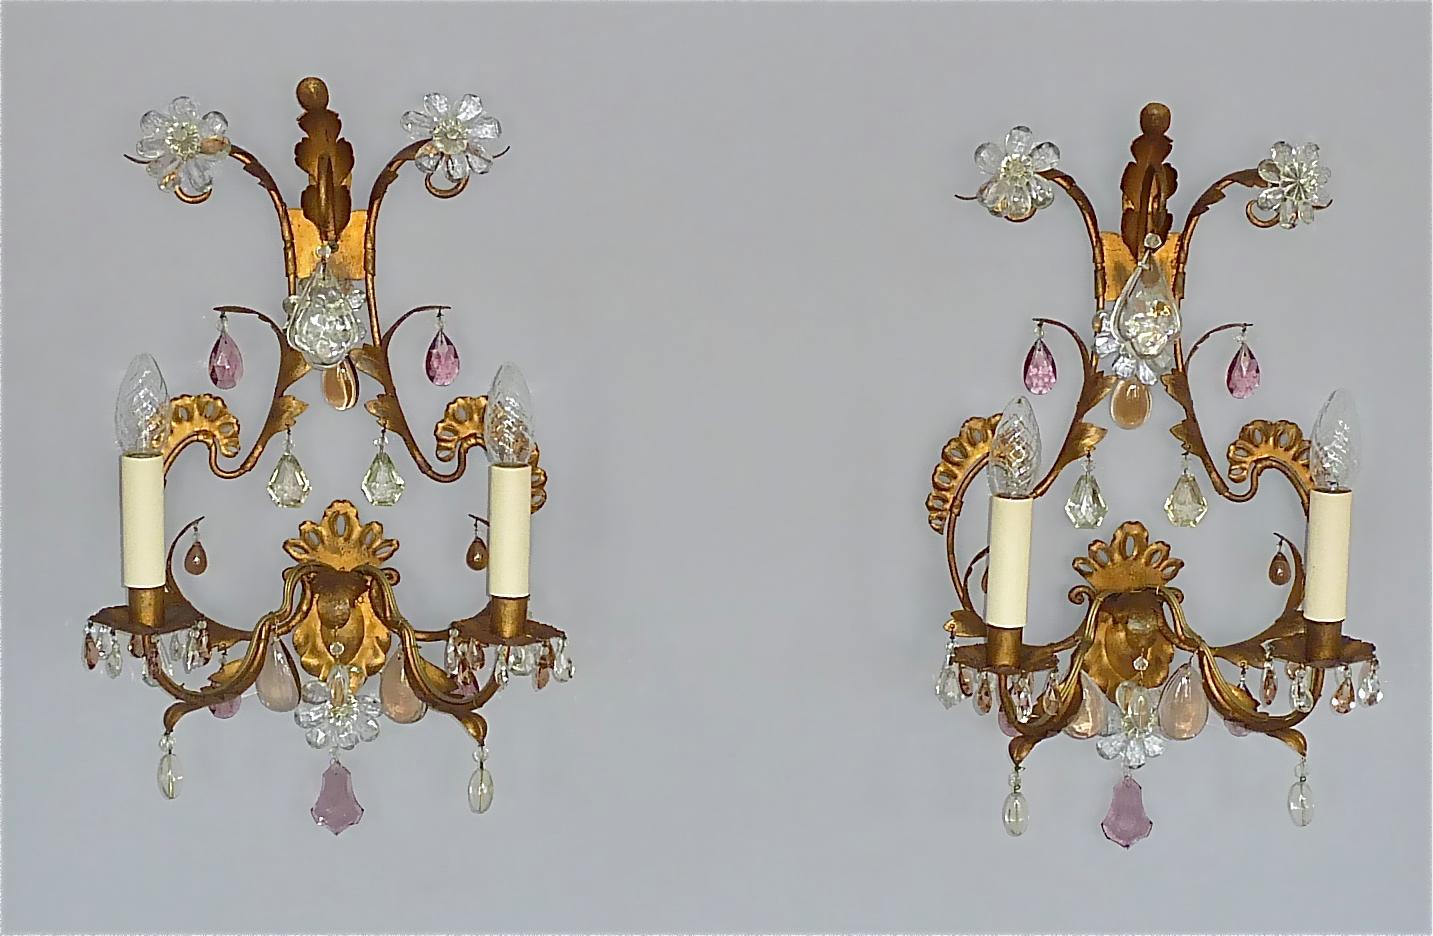 Großes, raffiniertes Paar floraler Blatt-Wandleuchten im Maison Baguès-Stil, Frankreich um 1950. Sie sind aus vergoldetem Eisen / Metall kombiniert mit wunderschönem facettiertem Kristallglas in klarer, amethystfarbener und hellbrauner Farbe mit